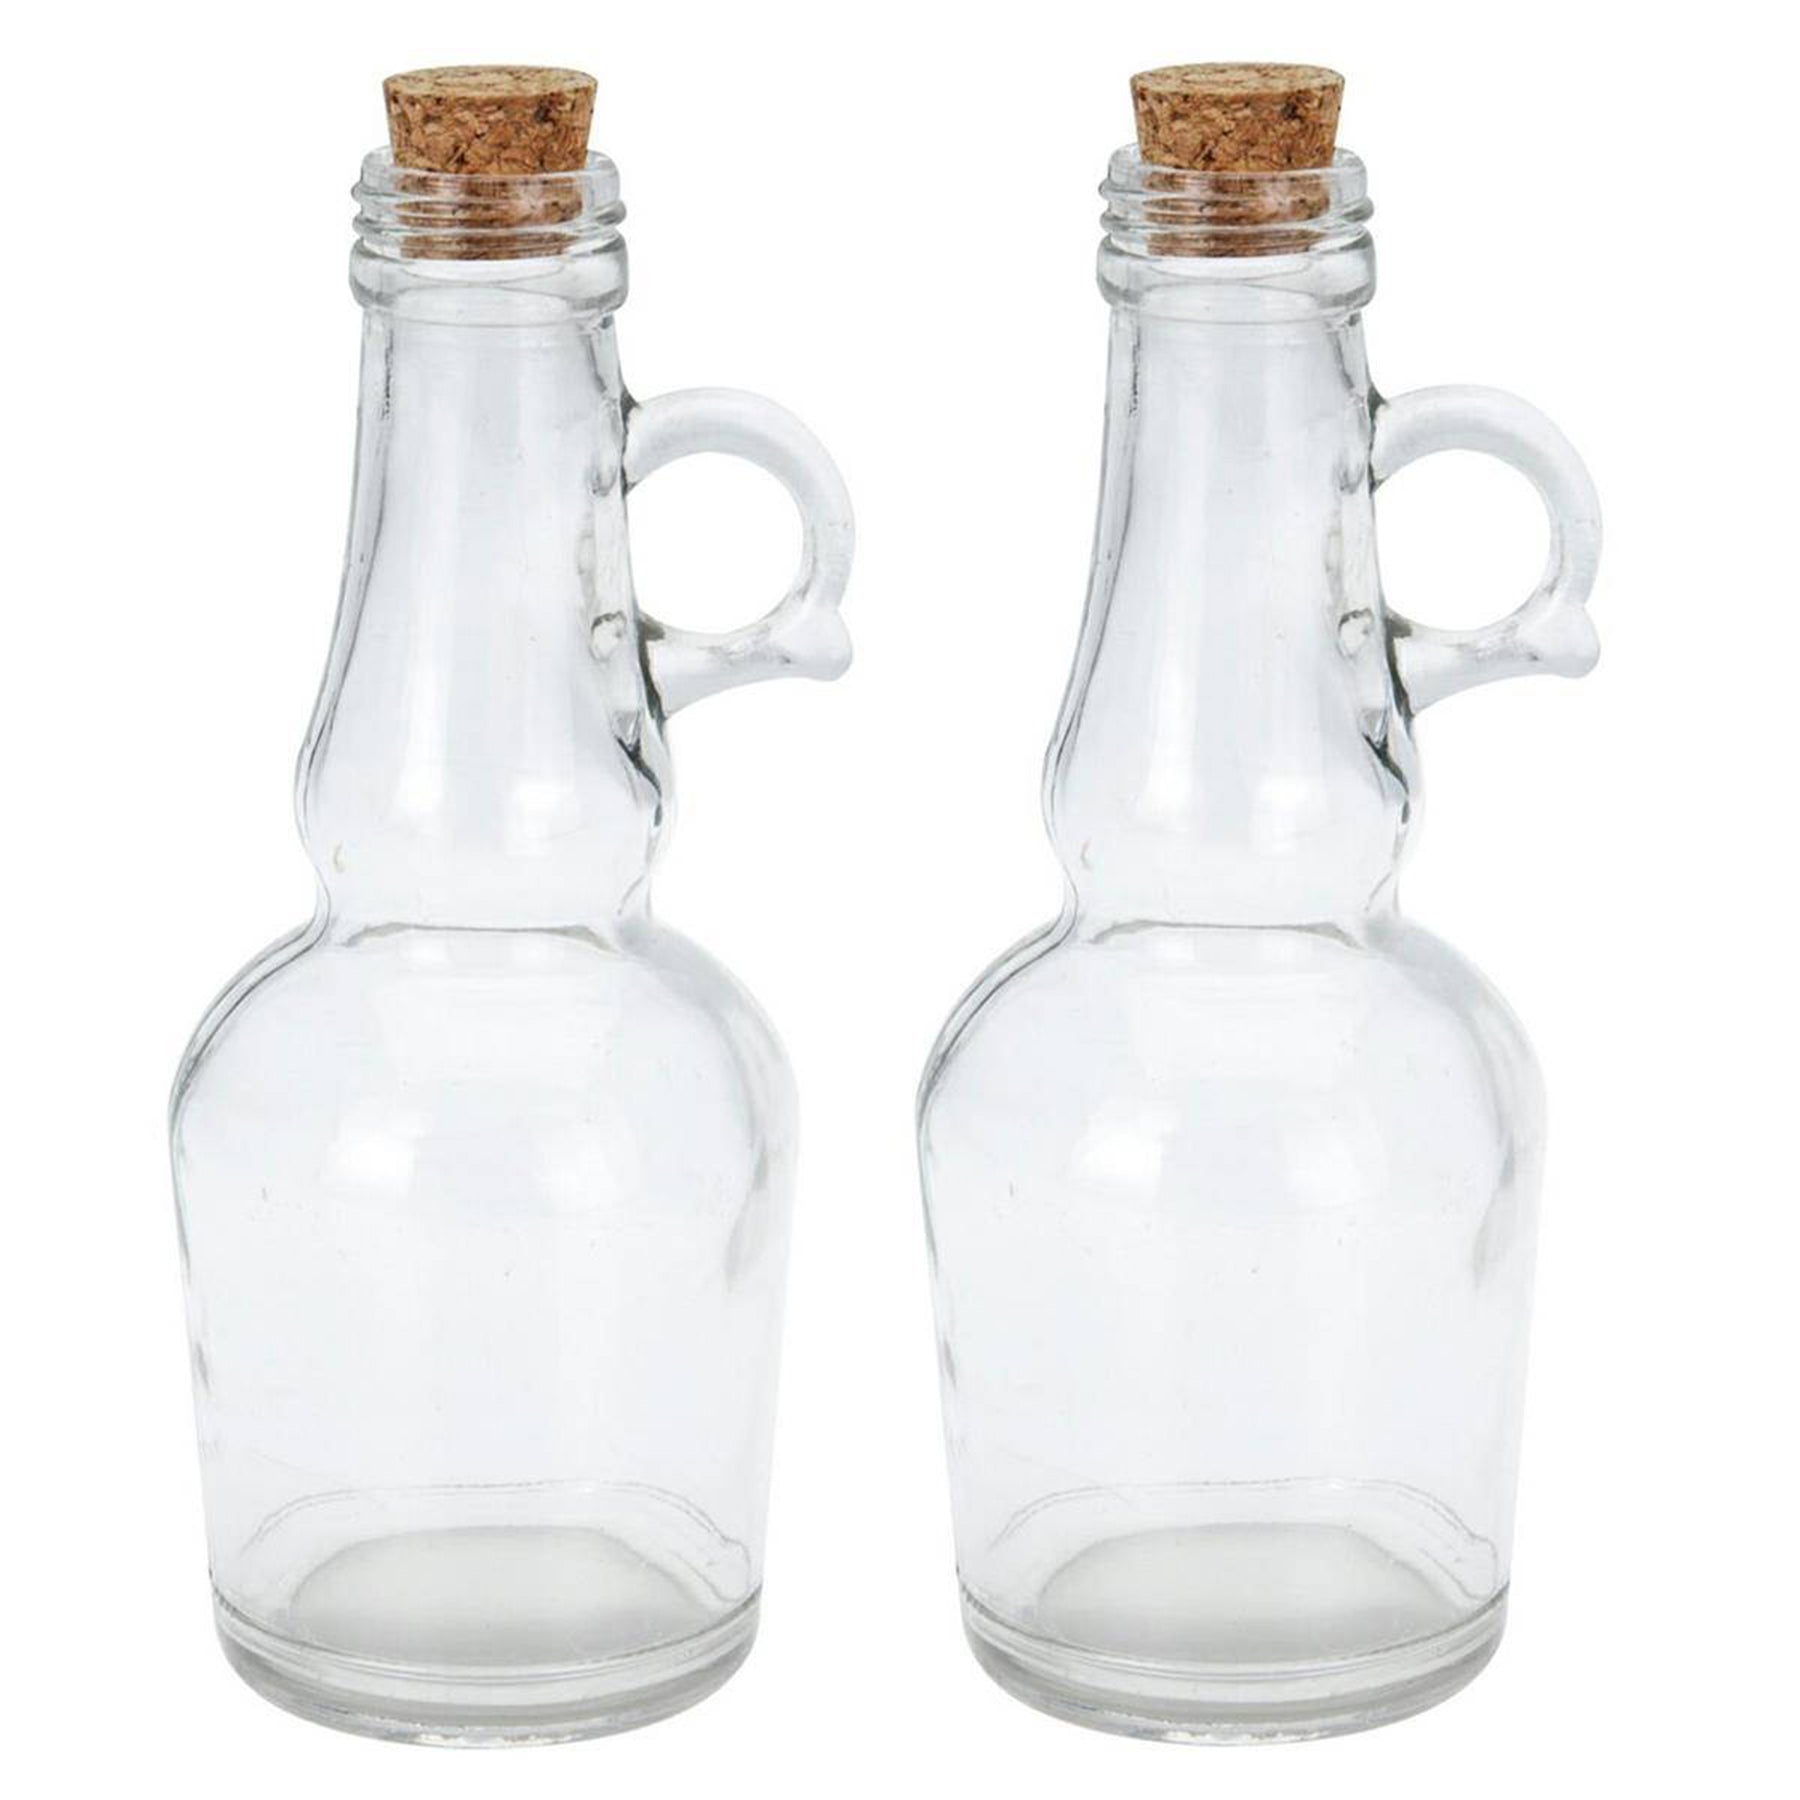 Oil & Vinegar glass bottle set, Clear